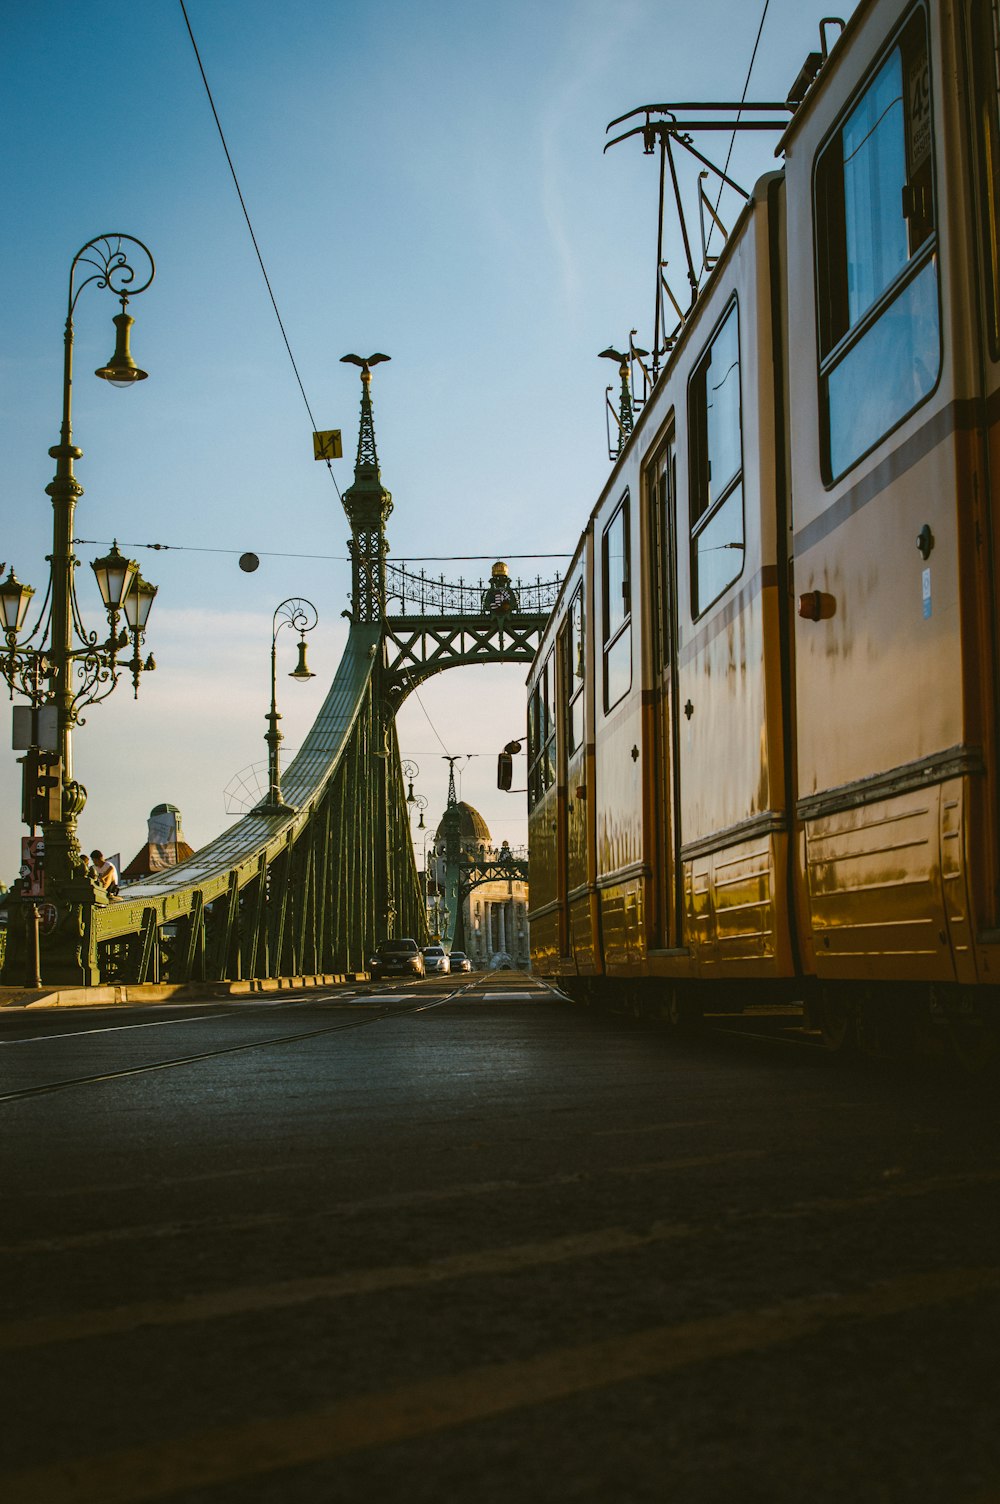 yellow tram viewing bridge during daytime